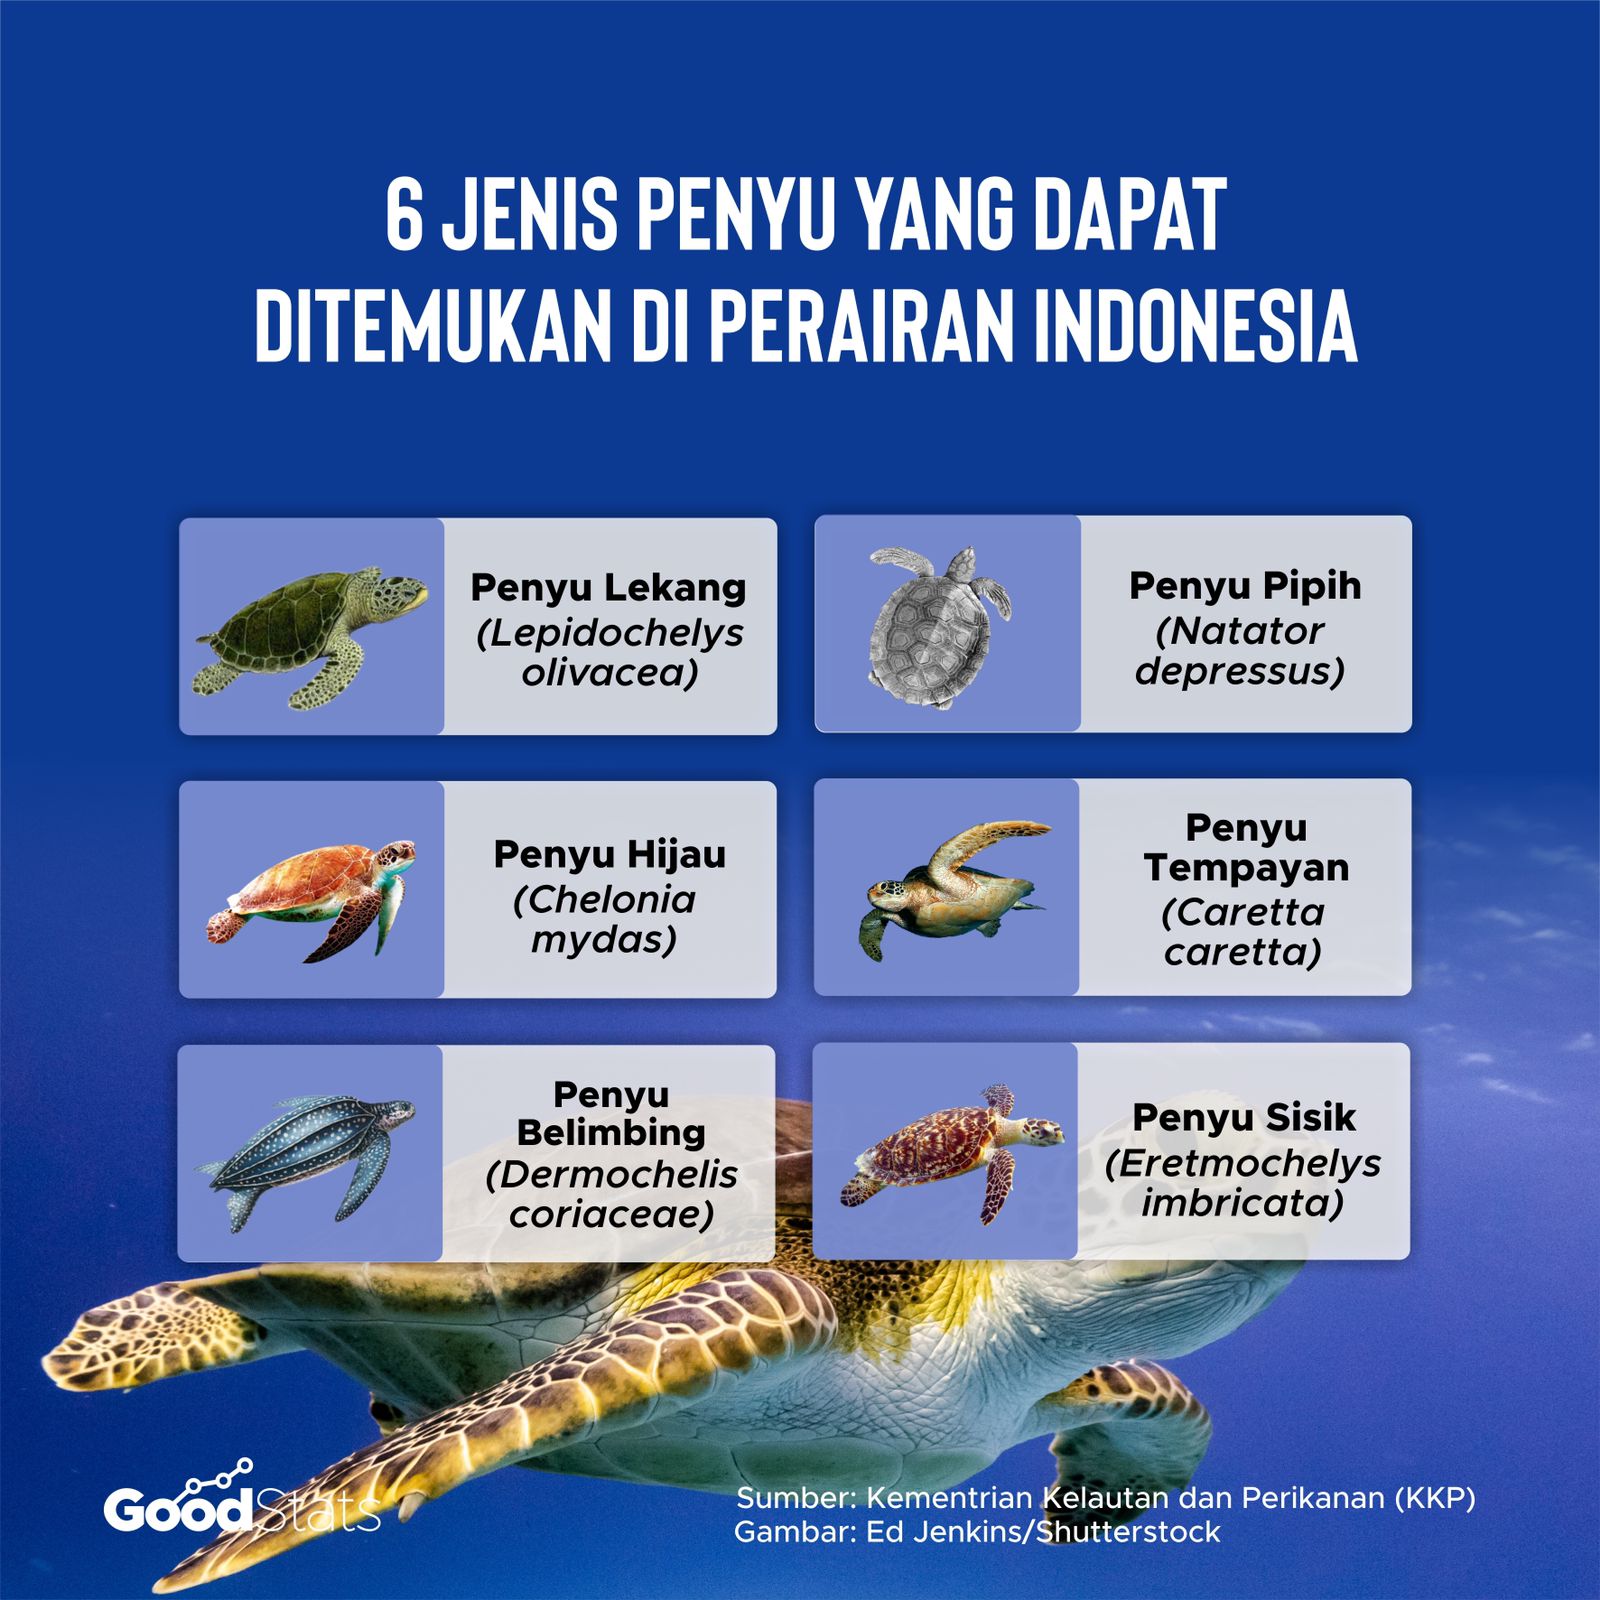 6 jenis penyu dunia yang ada dan bisa ditemukan di wilayah perairan Indonesia.